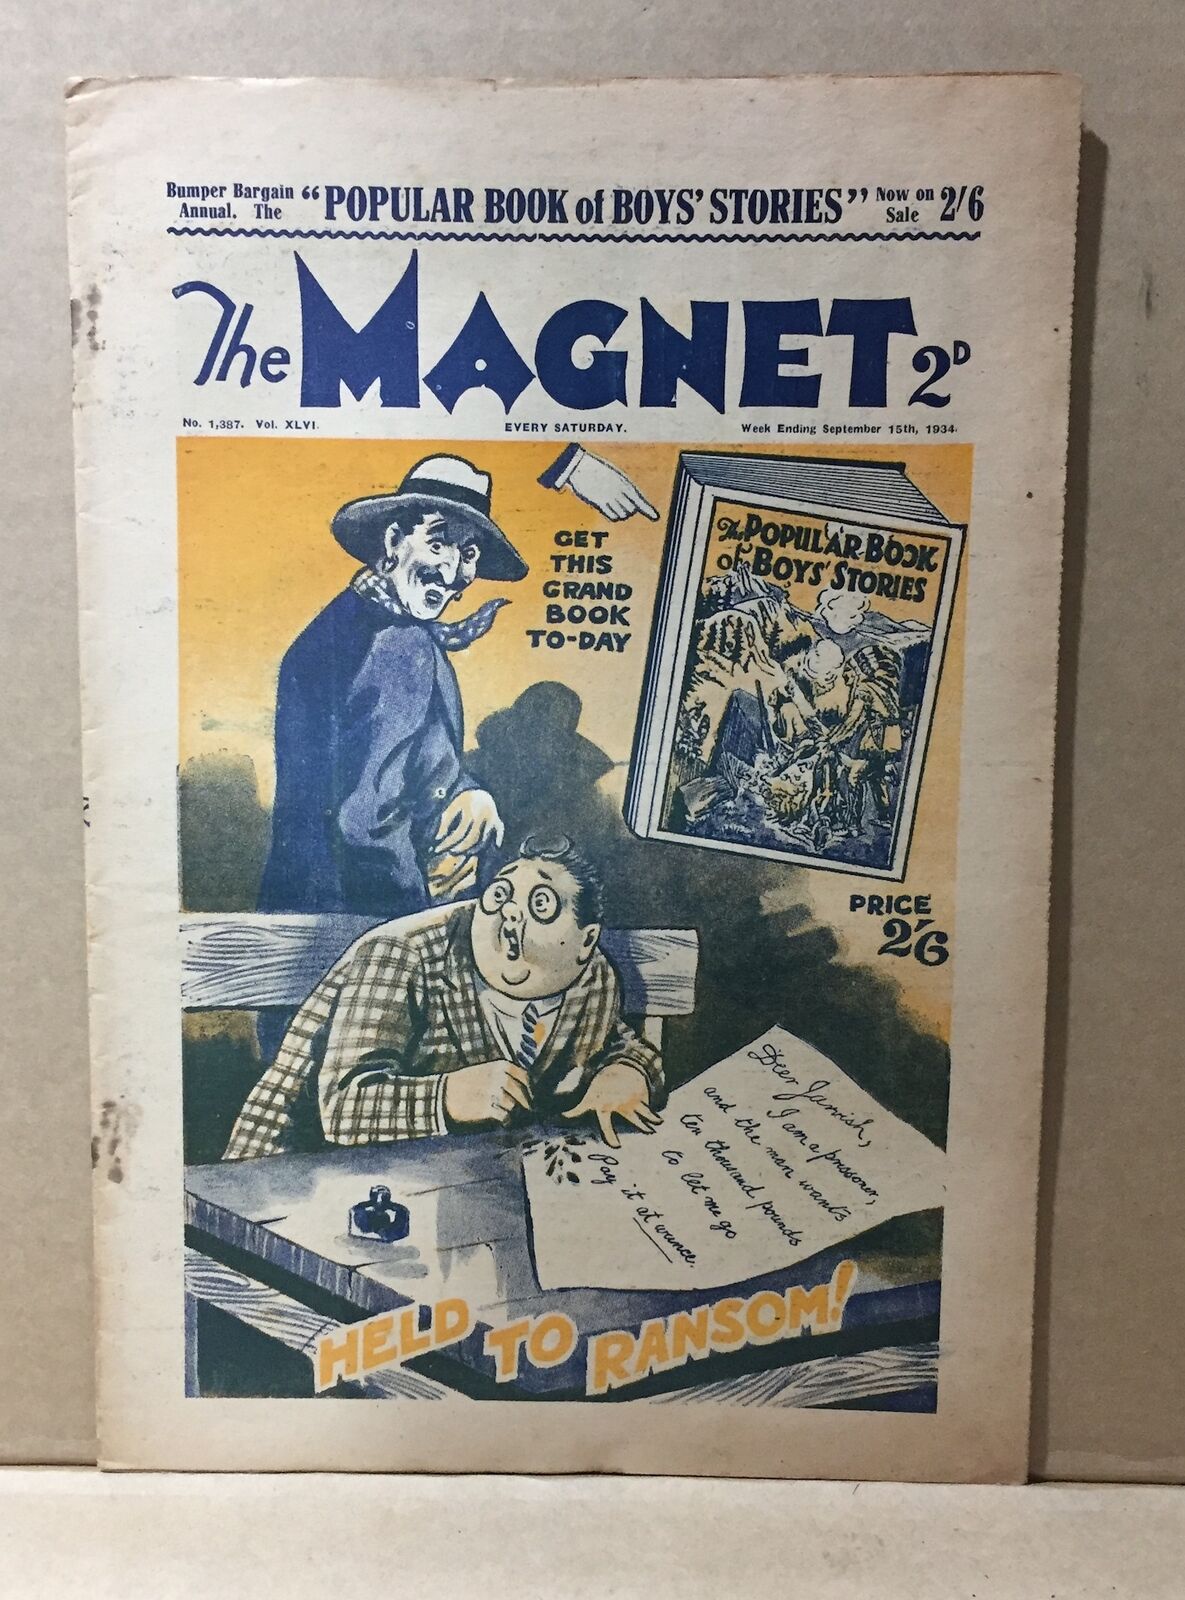 COMIC BOOK - THE MAGNET 2D NO.1387 1934